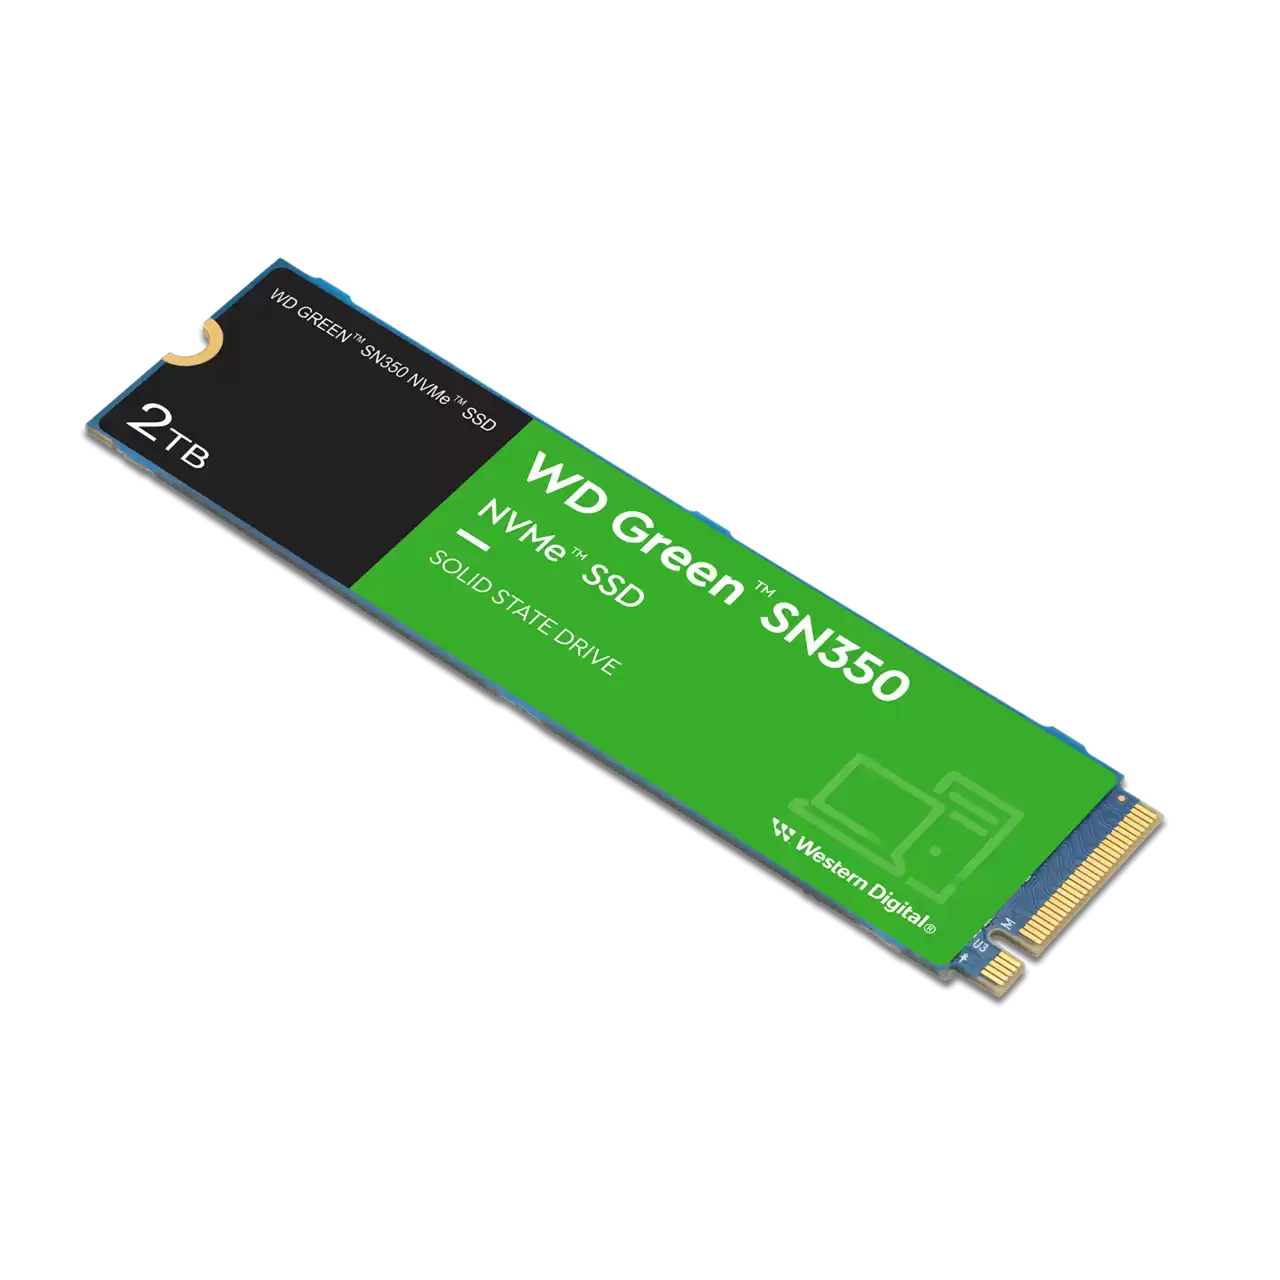 WD Green WDS200T3G0C  SN350 2TB PCIE M.2 3D NAND NVMe SSD